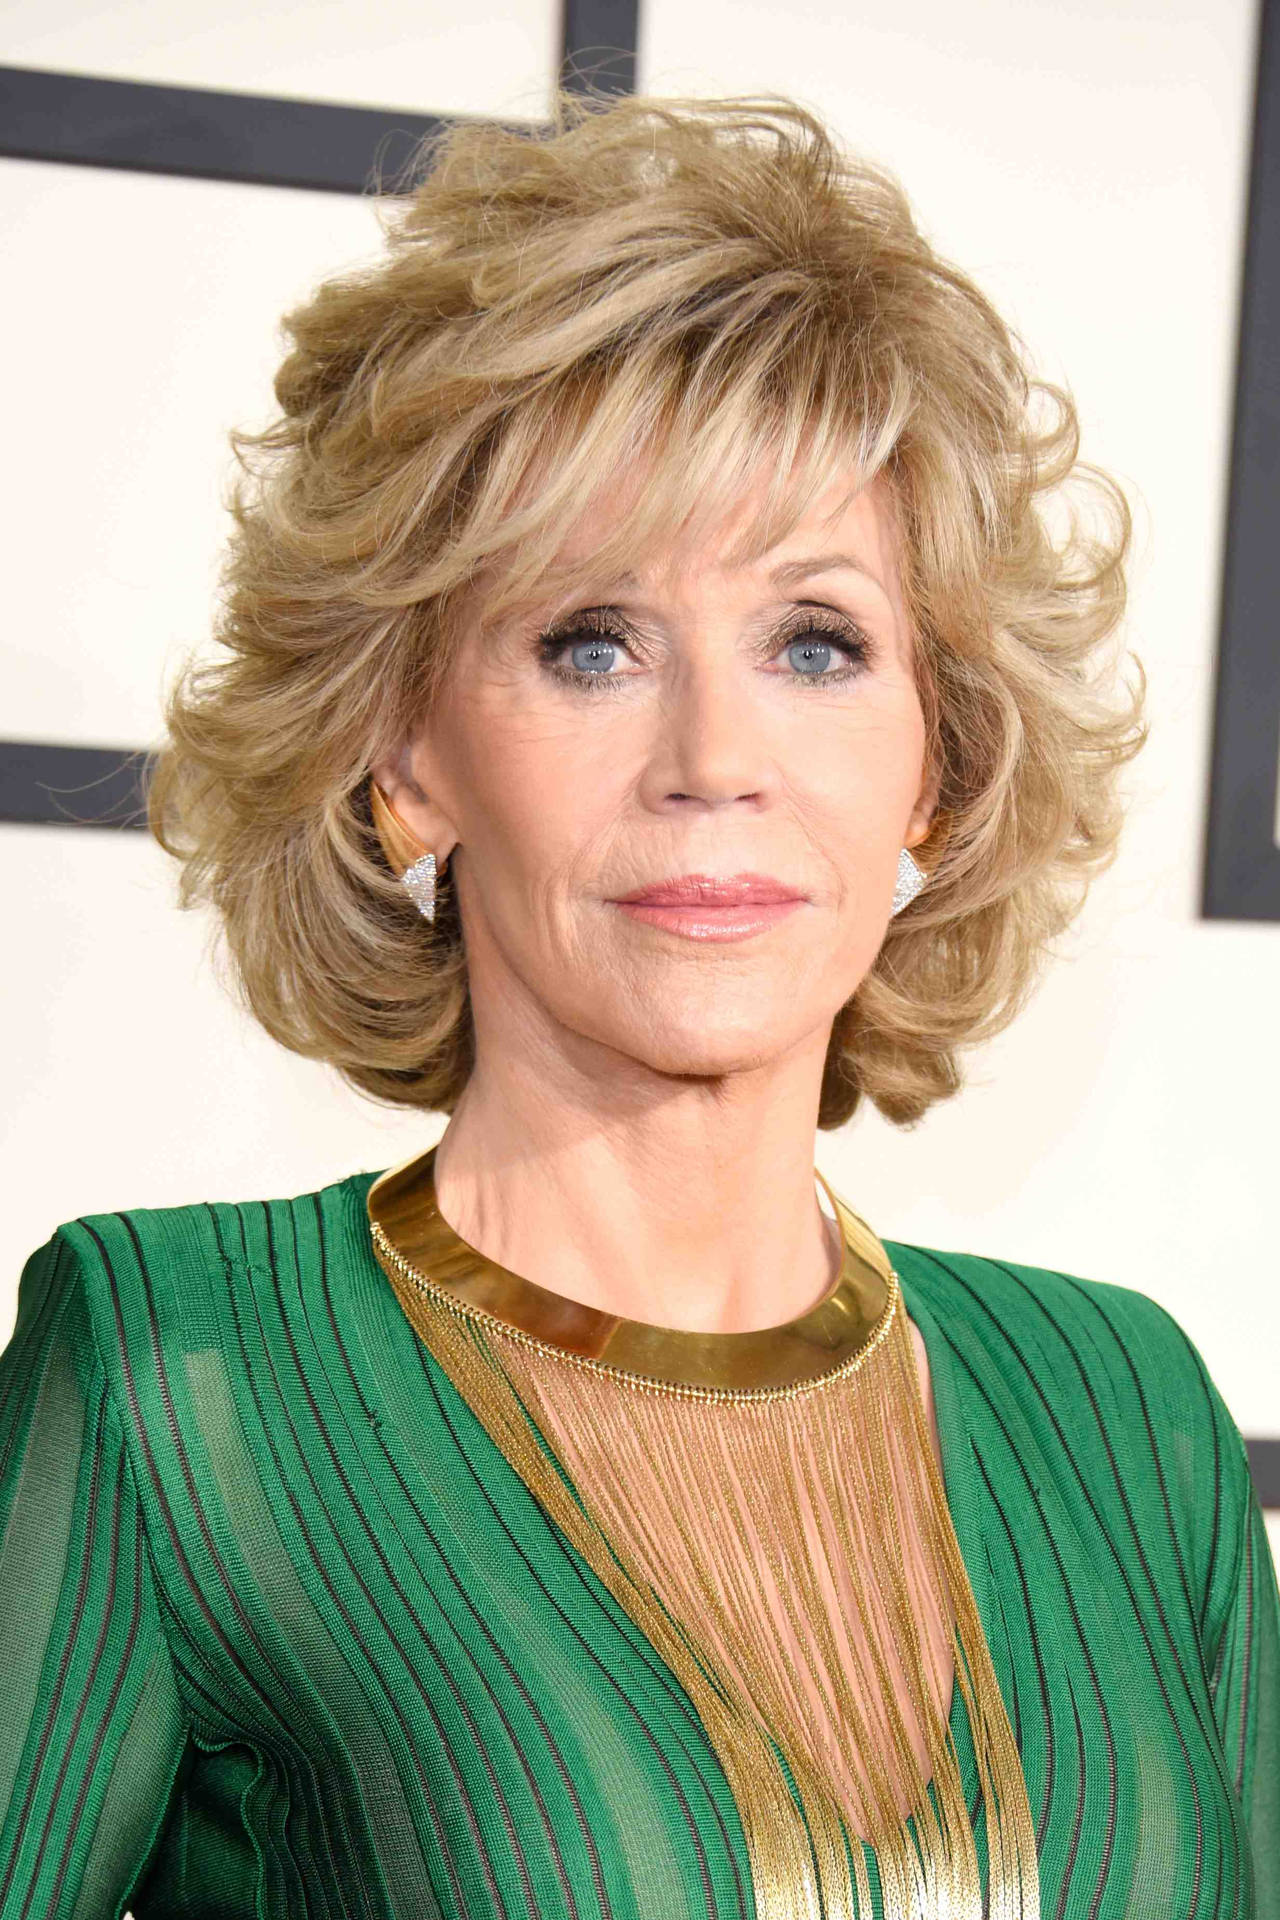 Actrizestadounidense Jane Fonda En Una Blusa Verde Y Dorada Fondo de pantalla